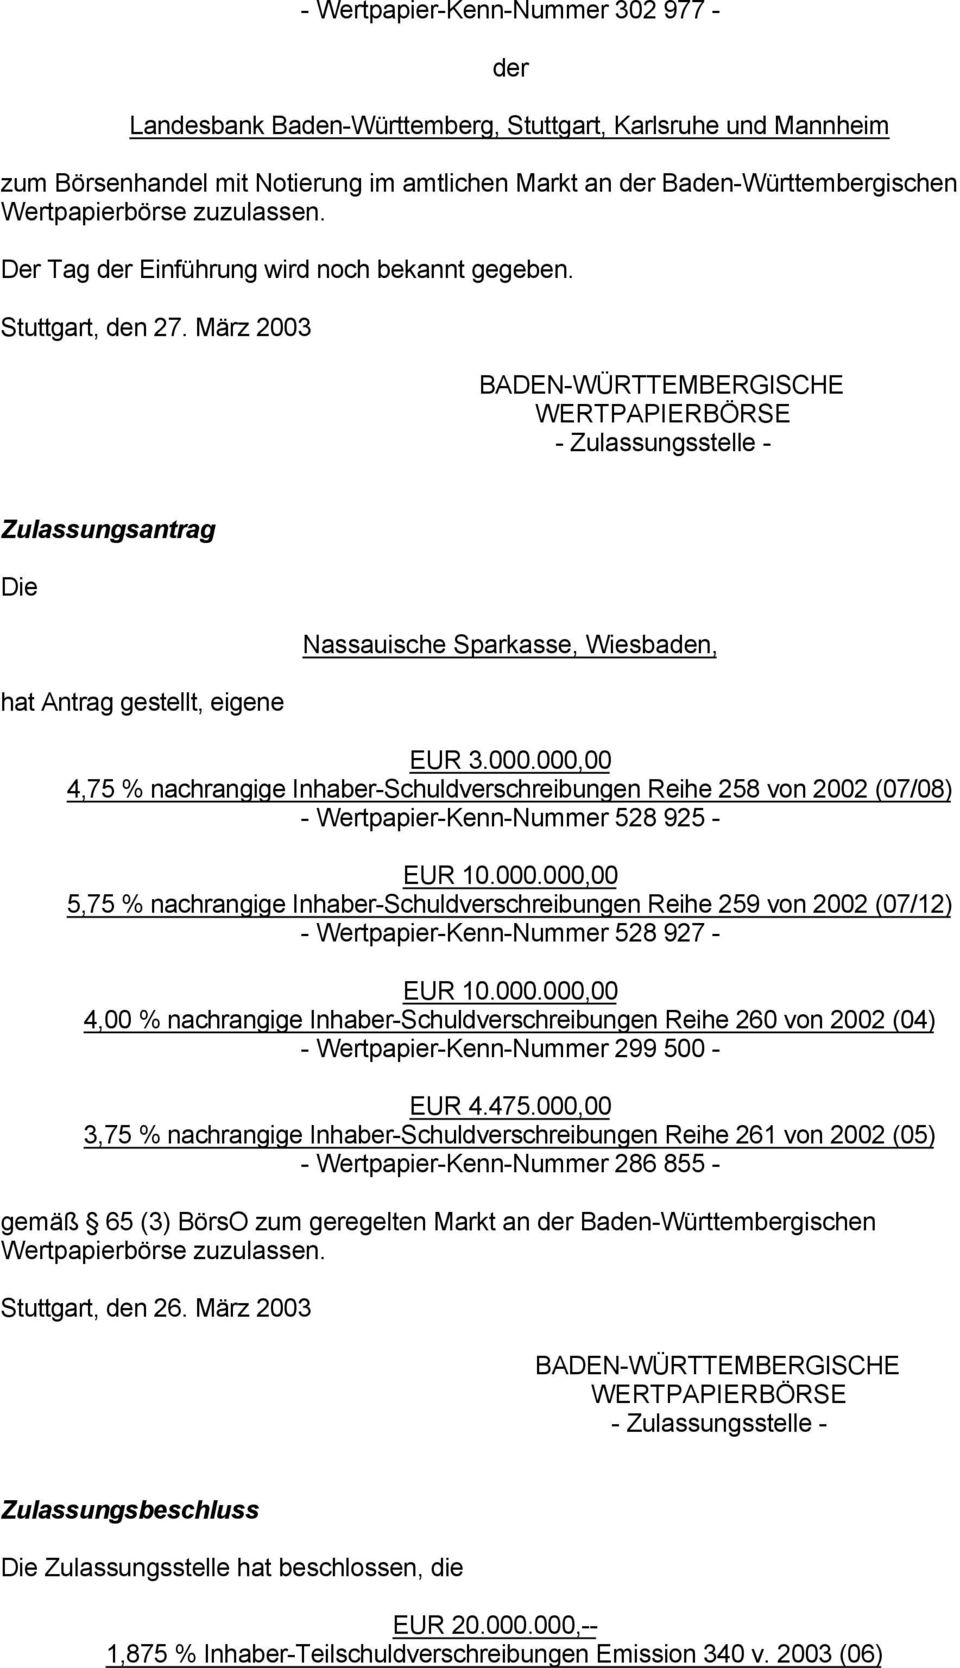 März 2003 BADEN-WÜRTTEMBERGISCHE WERTPAPIERBÖRSE - Zulassungsstelle - Zulassungsantrag Die hat Antrag gestellt, eigene Nassauische Sparkasse, Wiesbaden, EUR 3.000.